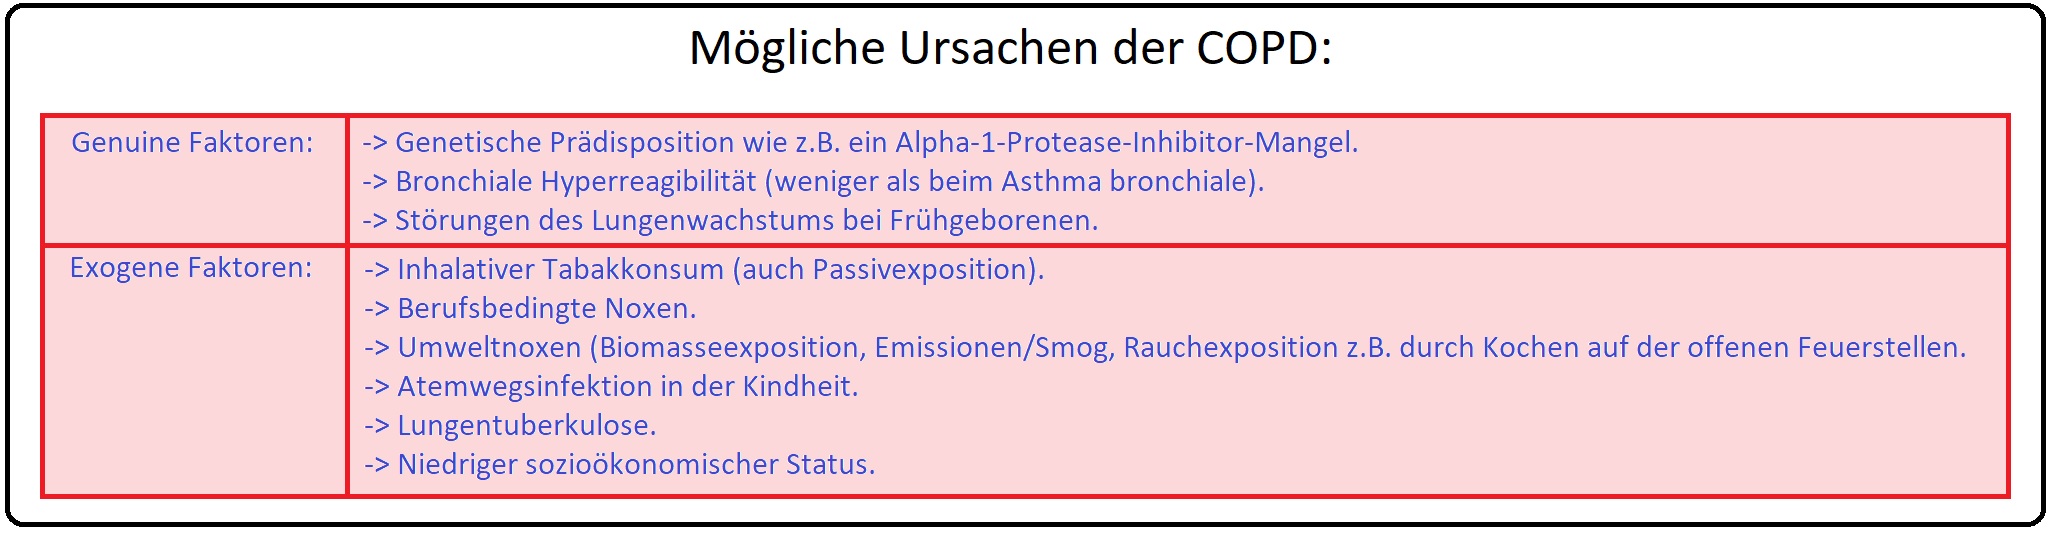 1289 Mögliche Ursachen der COPD